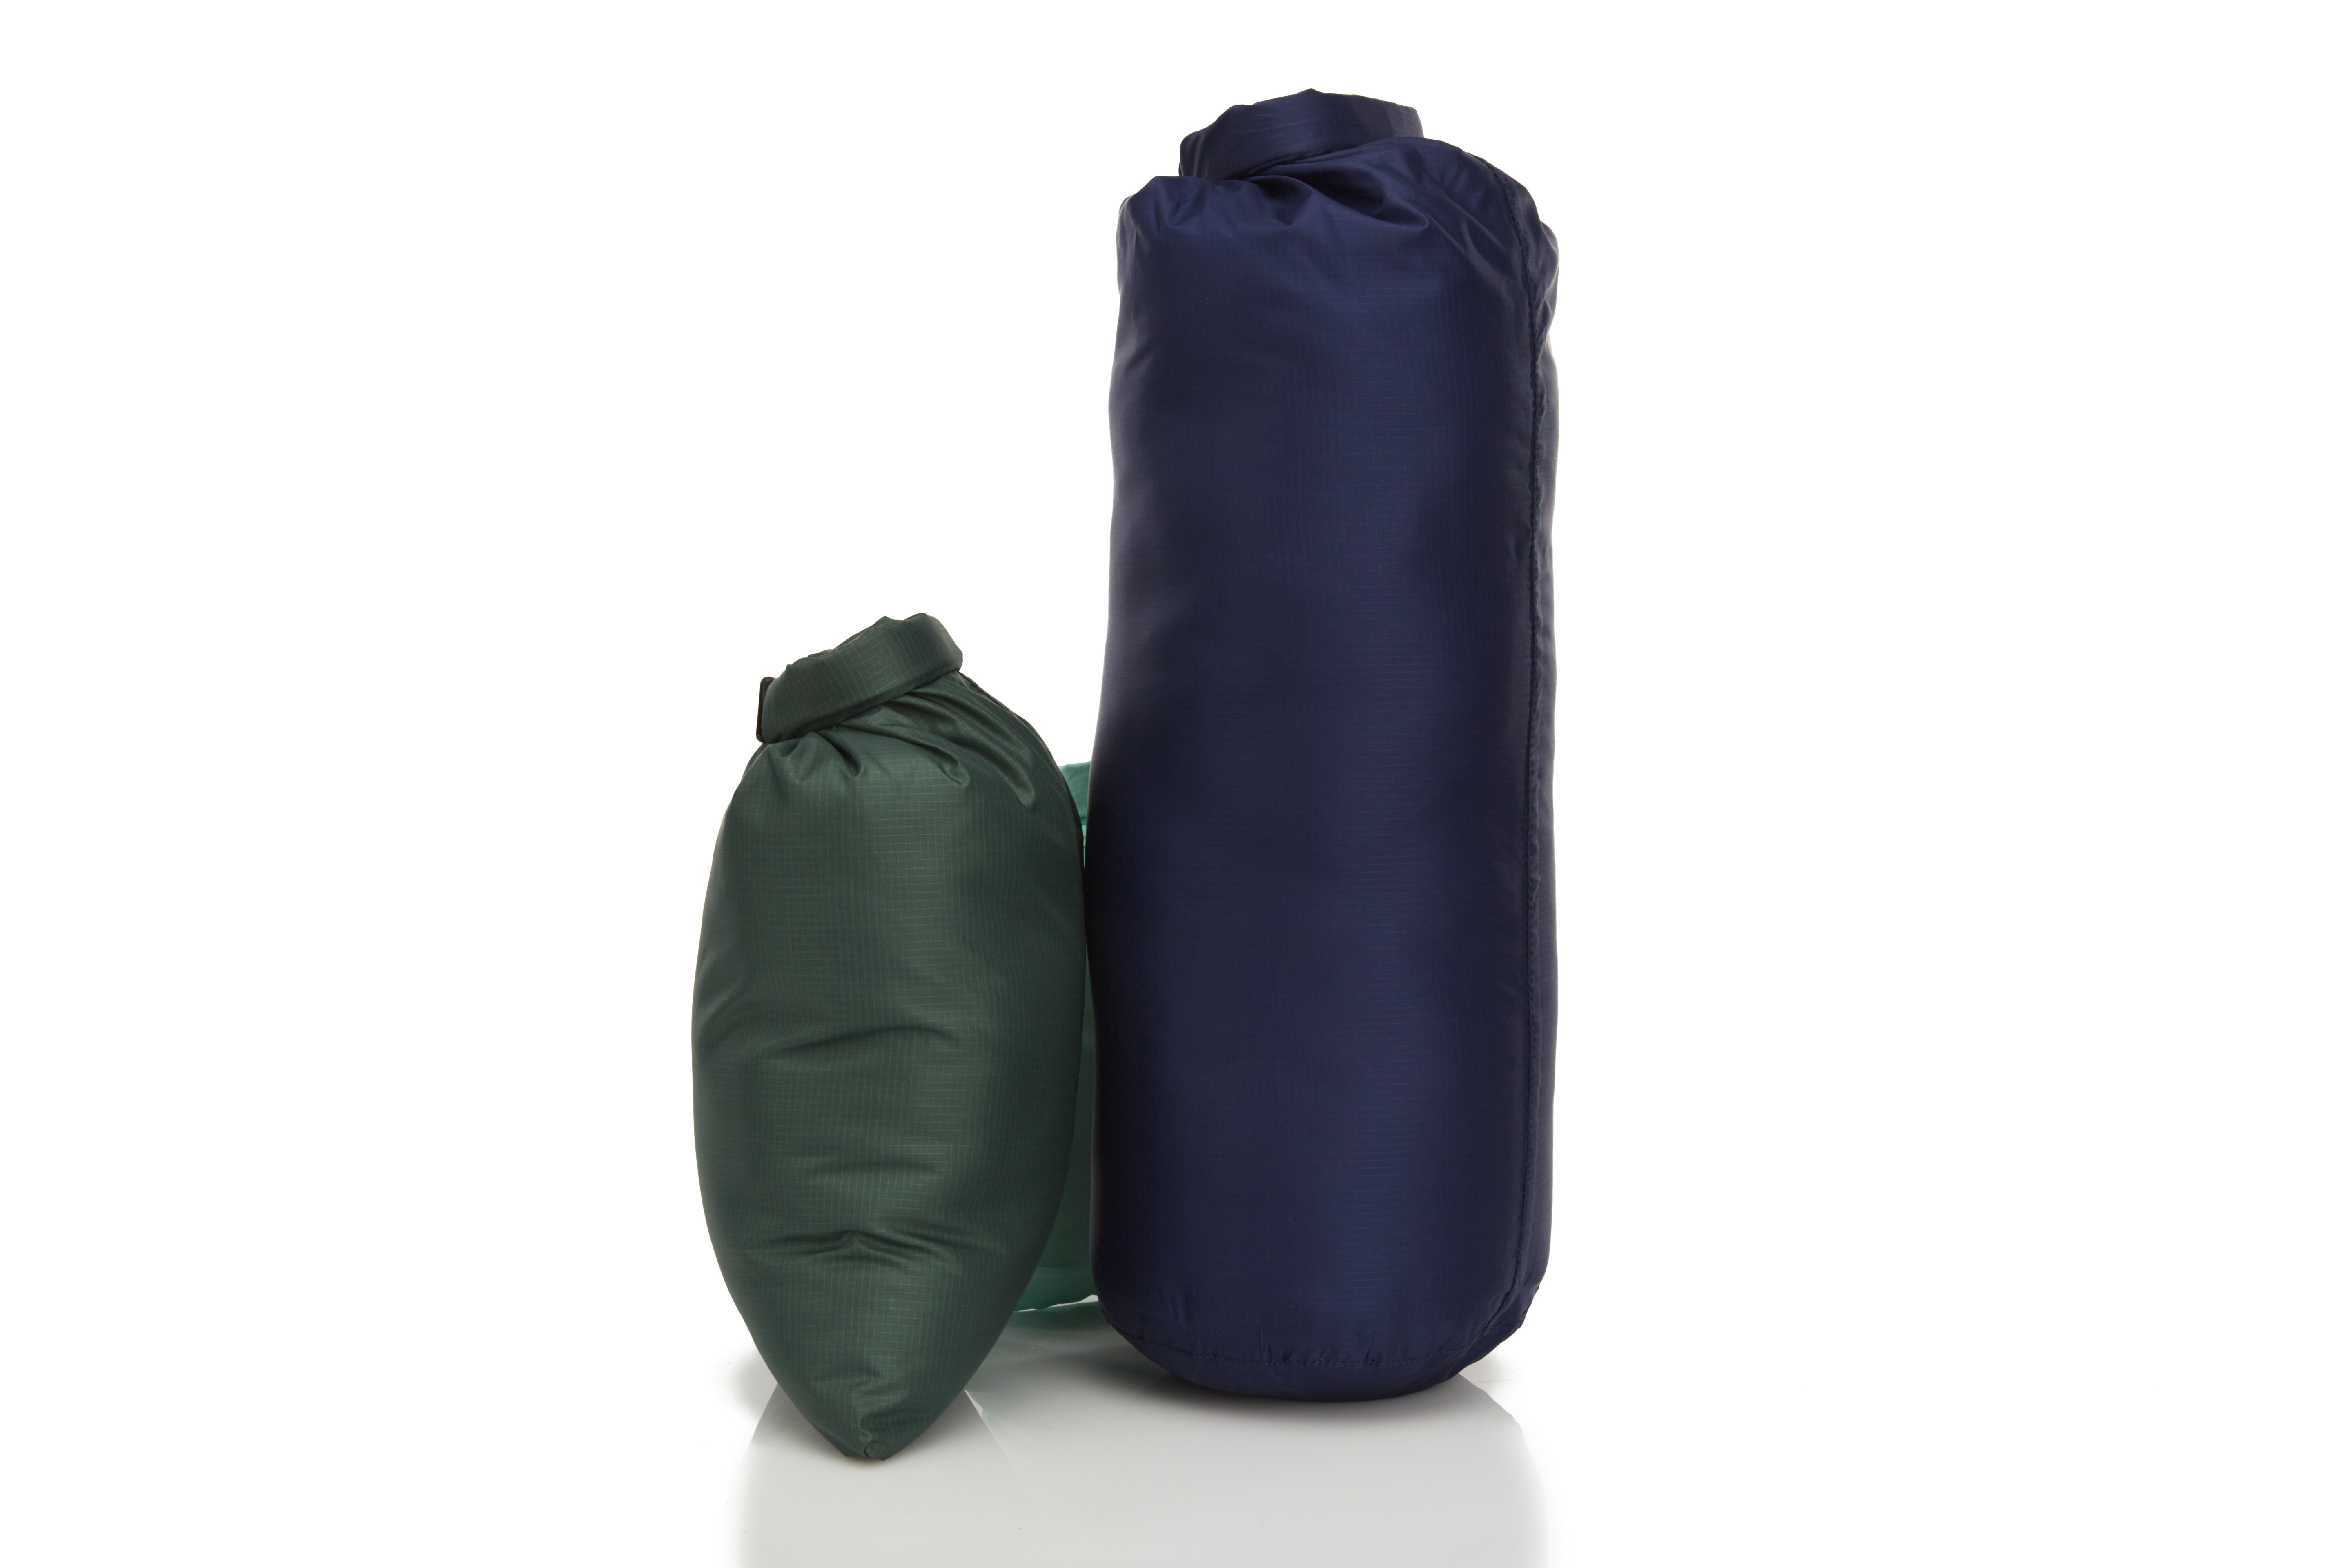 Buy GYMSÅK Premium Waterproof Dry Bags Online – Skog Å Kust